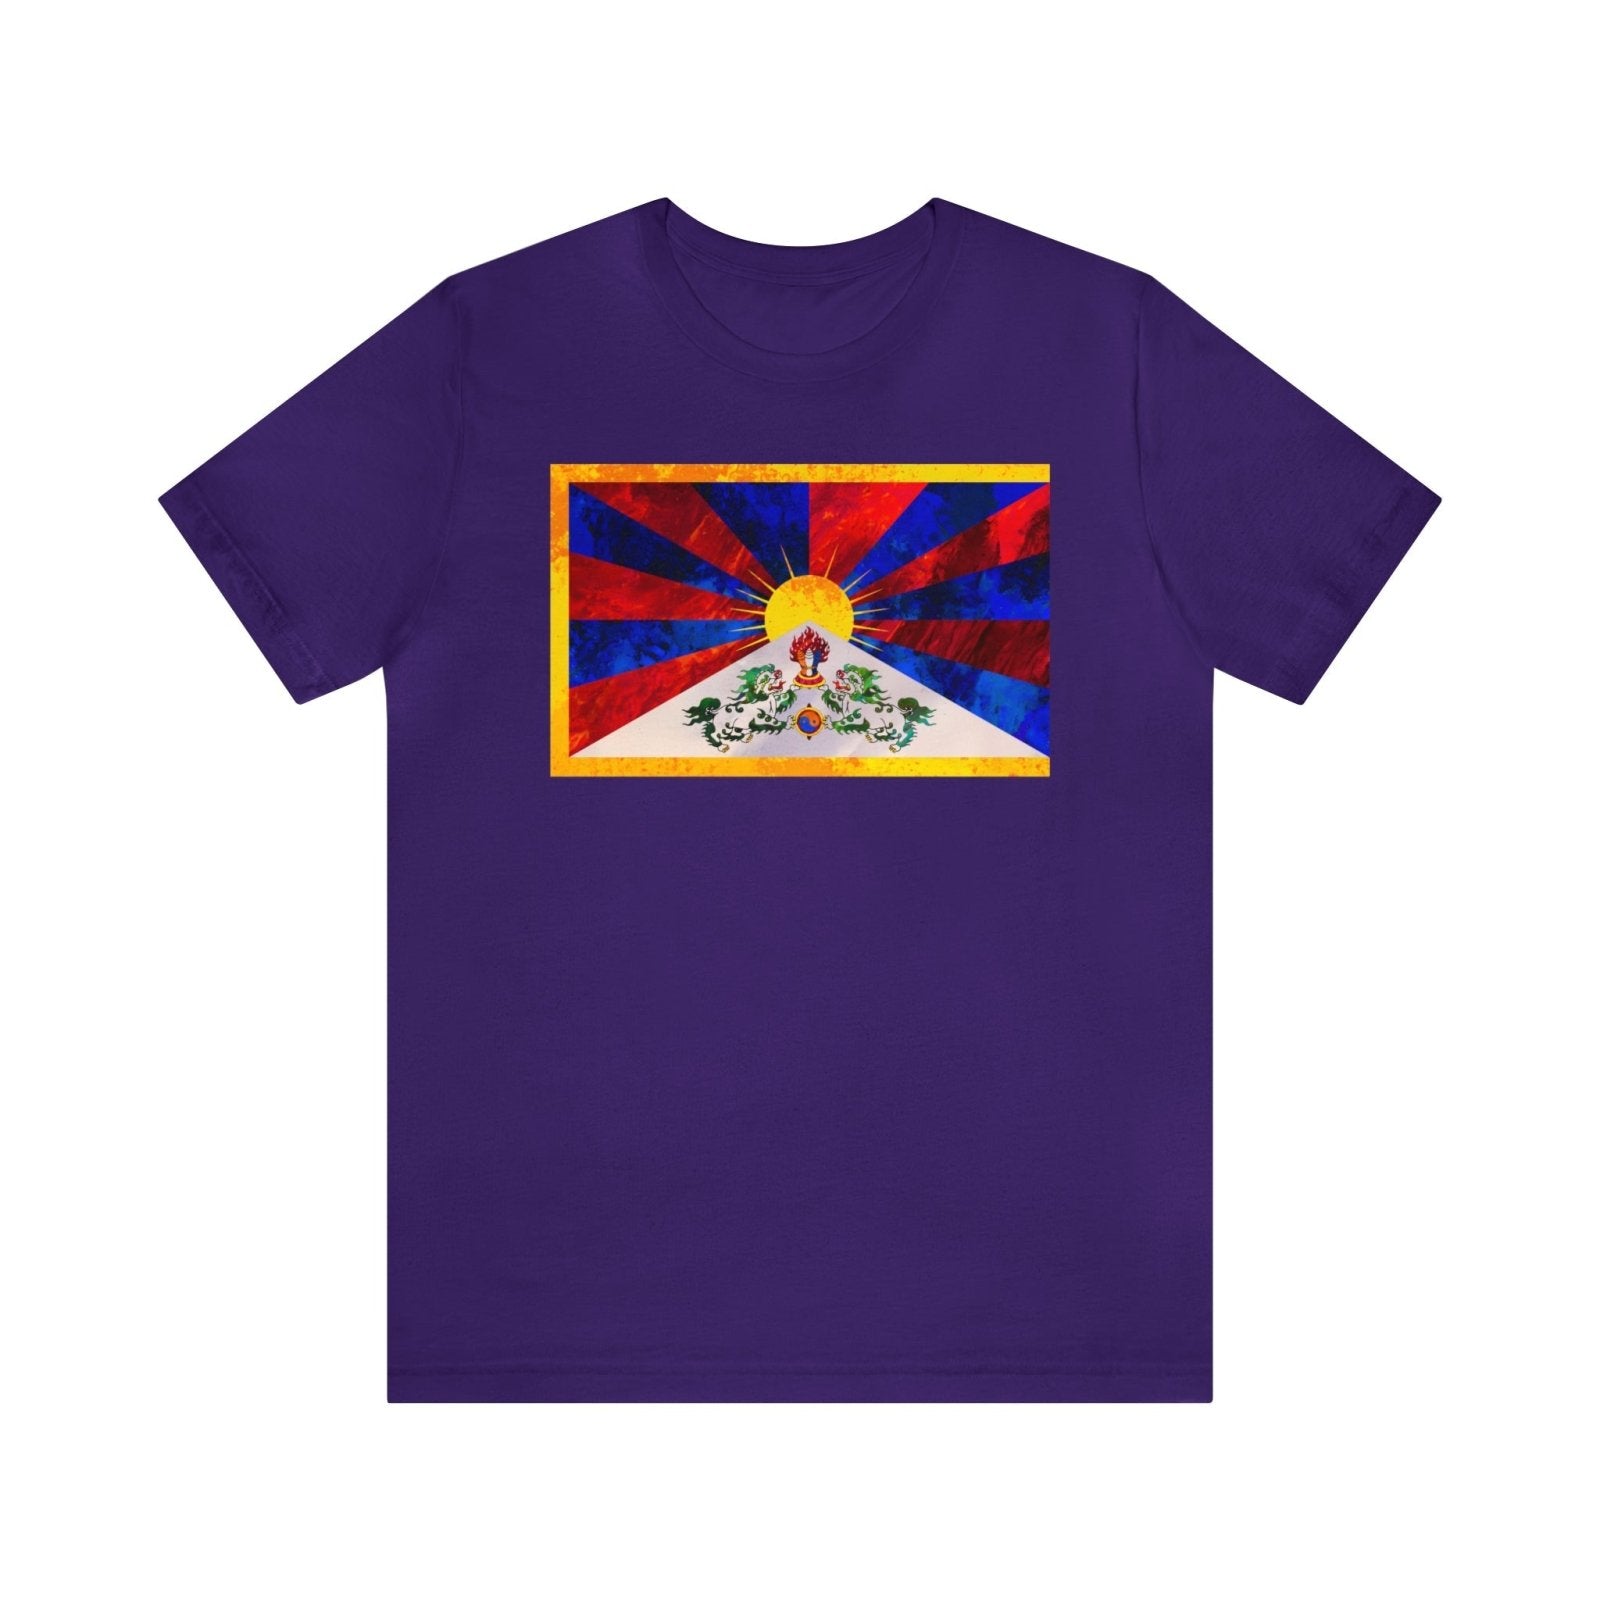 Tibetan Flag Unisex T-shirt - Subtle Blue M